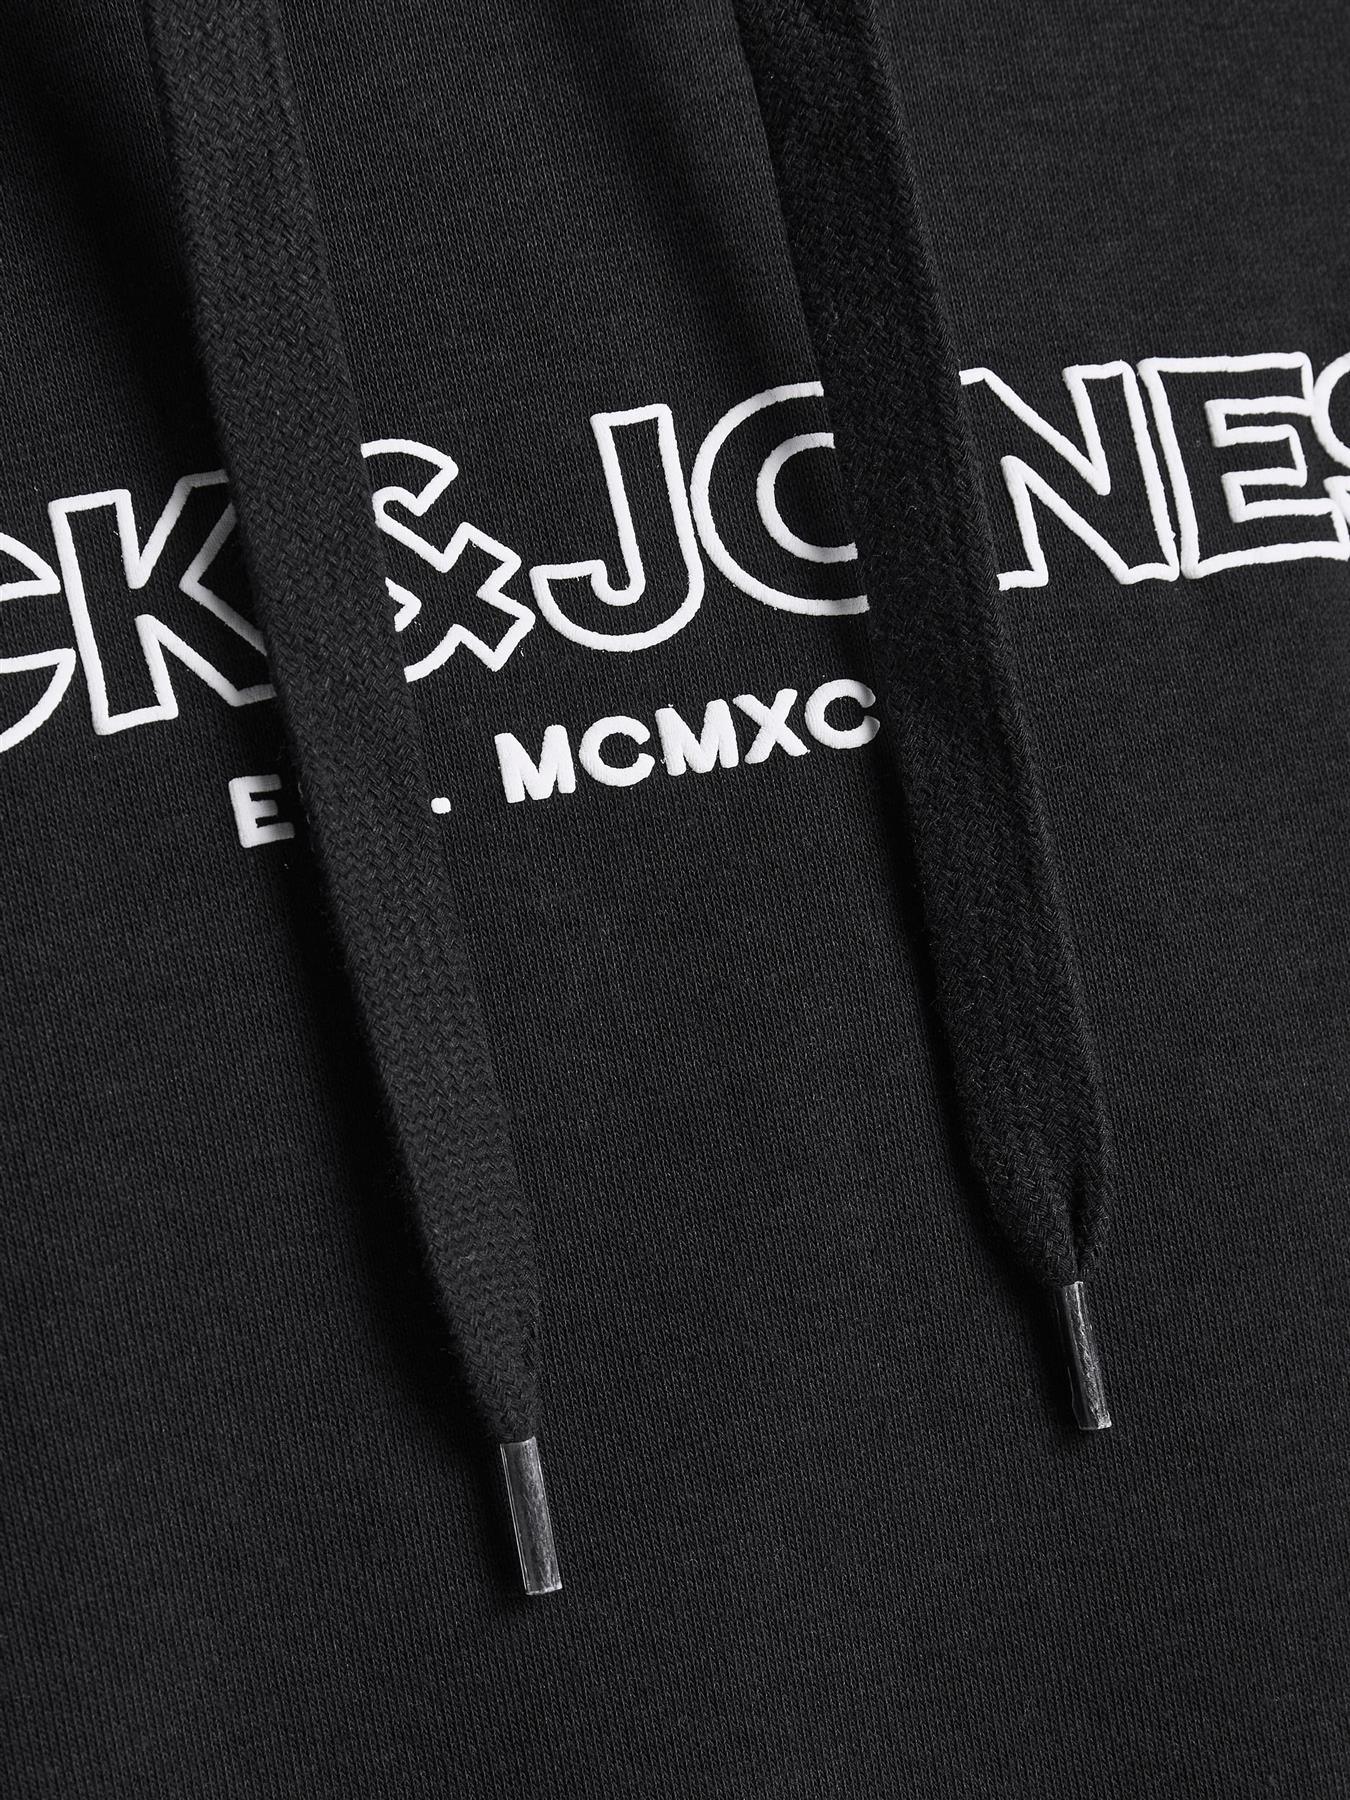 Jack & Jones Mens 'Bank' Hoody in Black